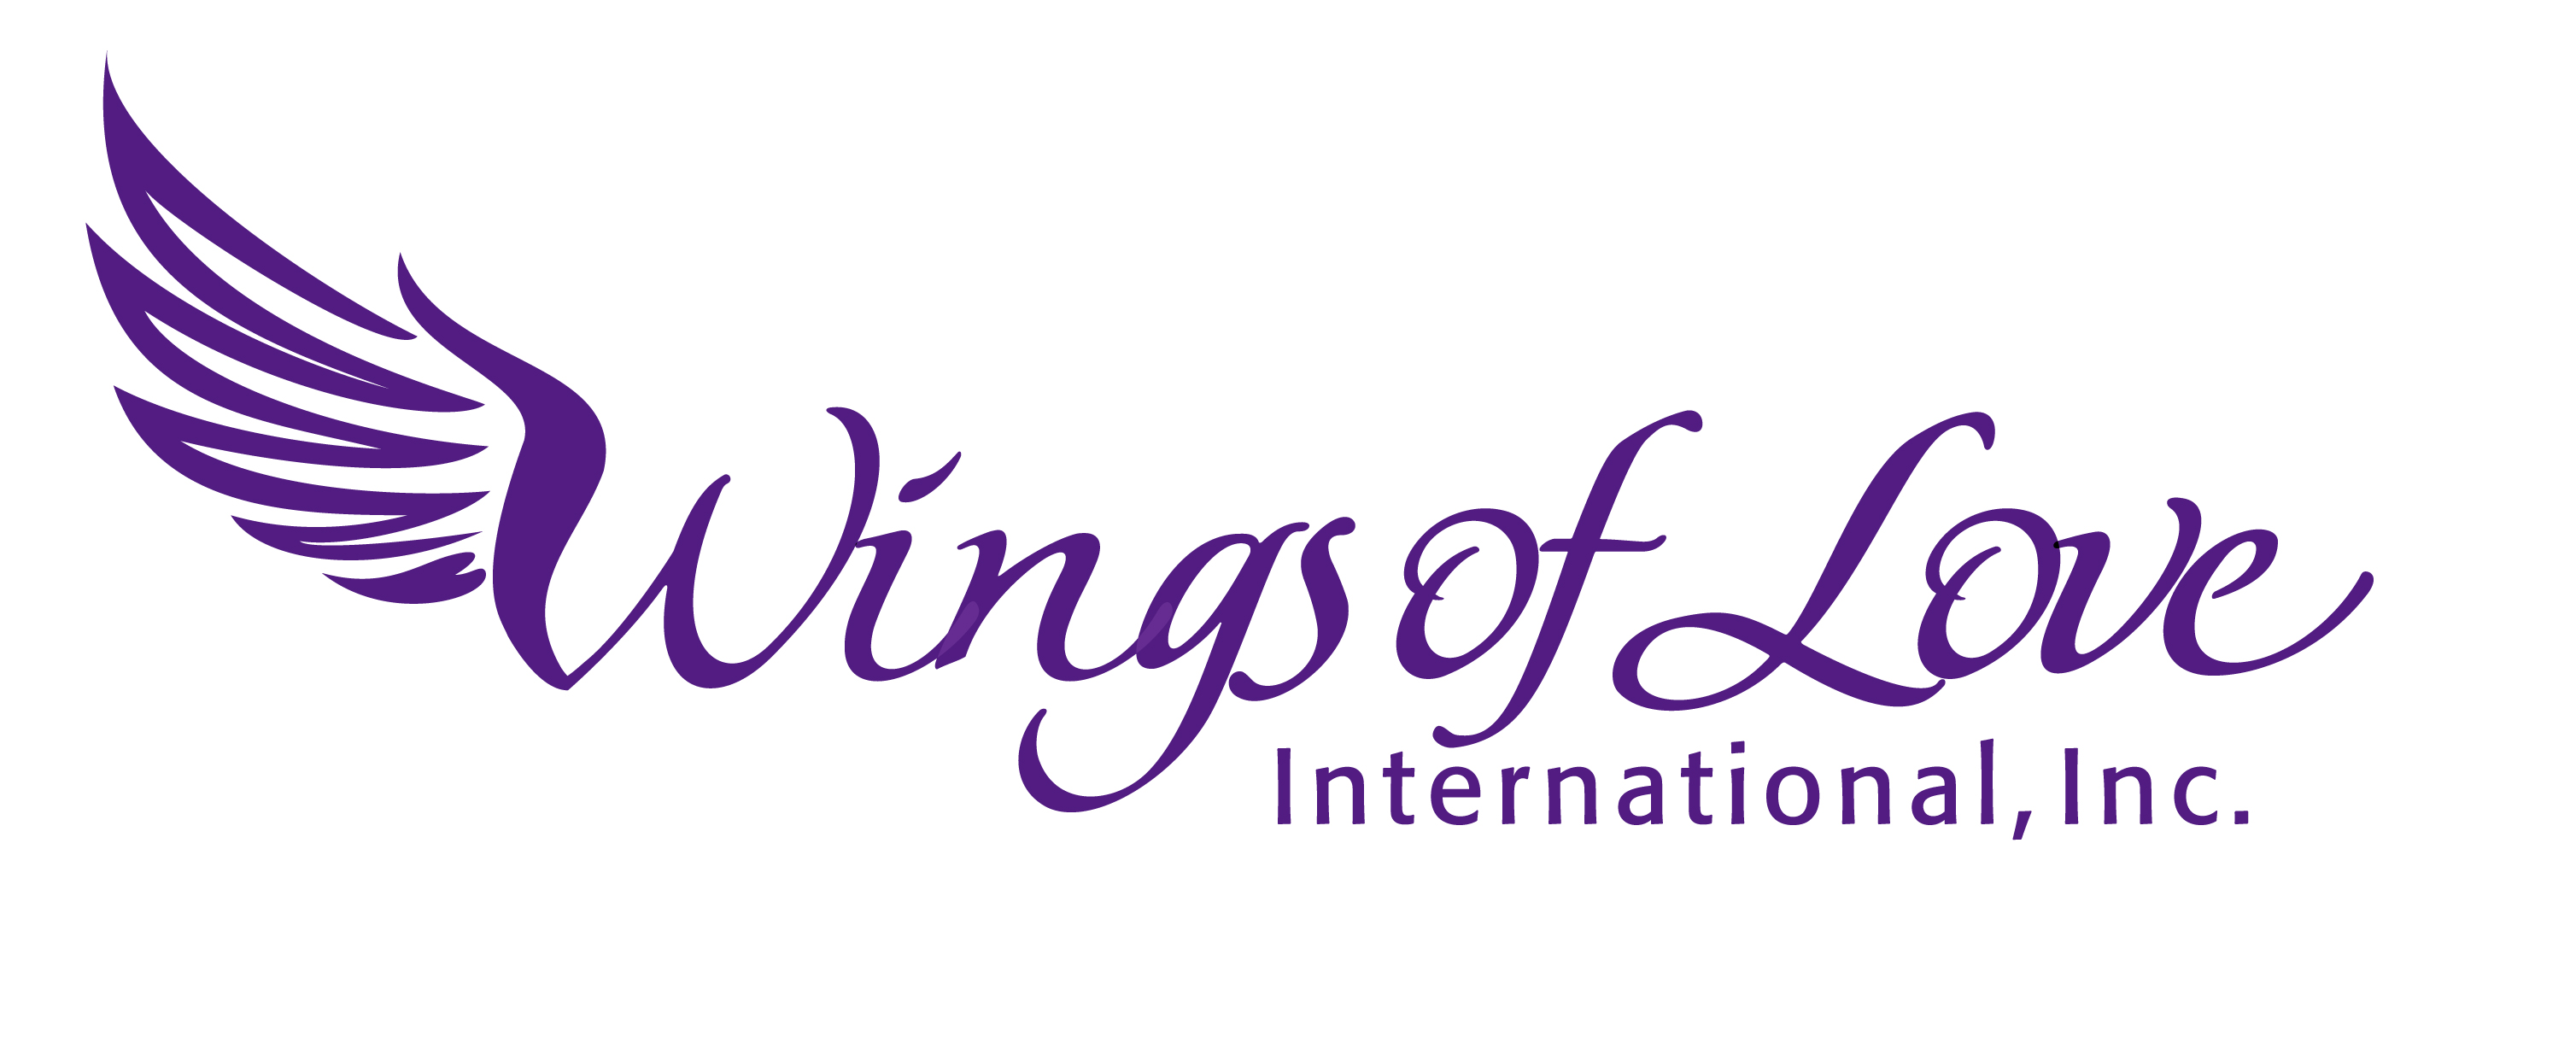 Wings-of-Love-Logo-Horizontal.jpg